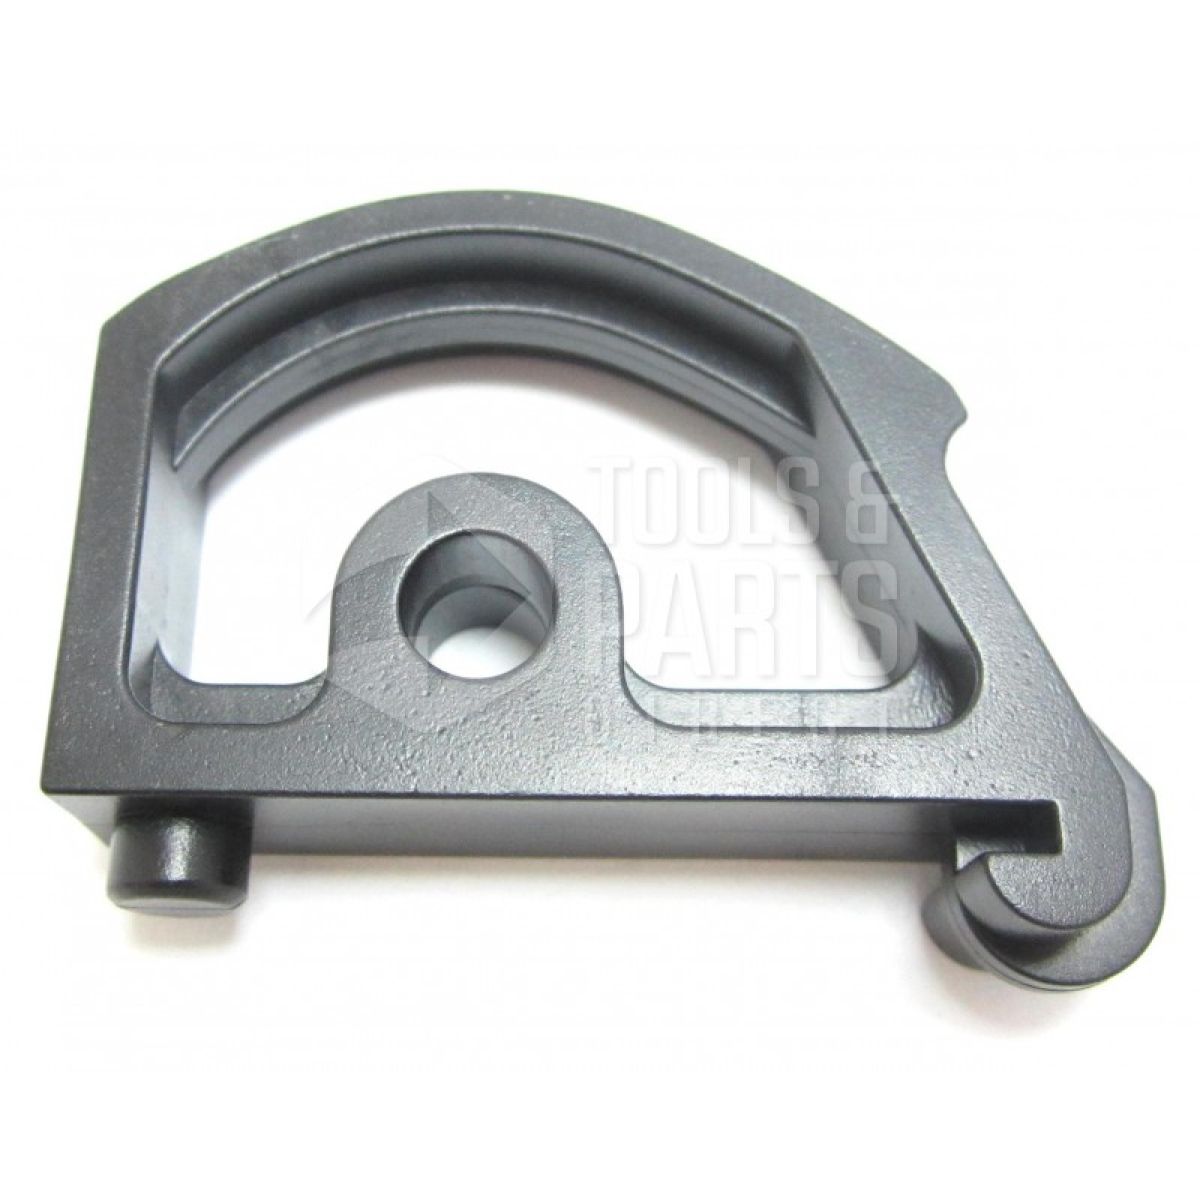 Black & Decker WM835 Type 2 Workmate Spare Parts - Part Shop Direct